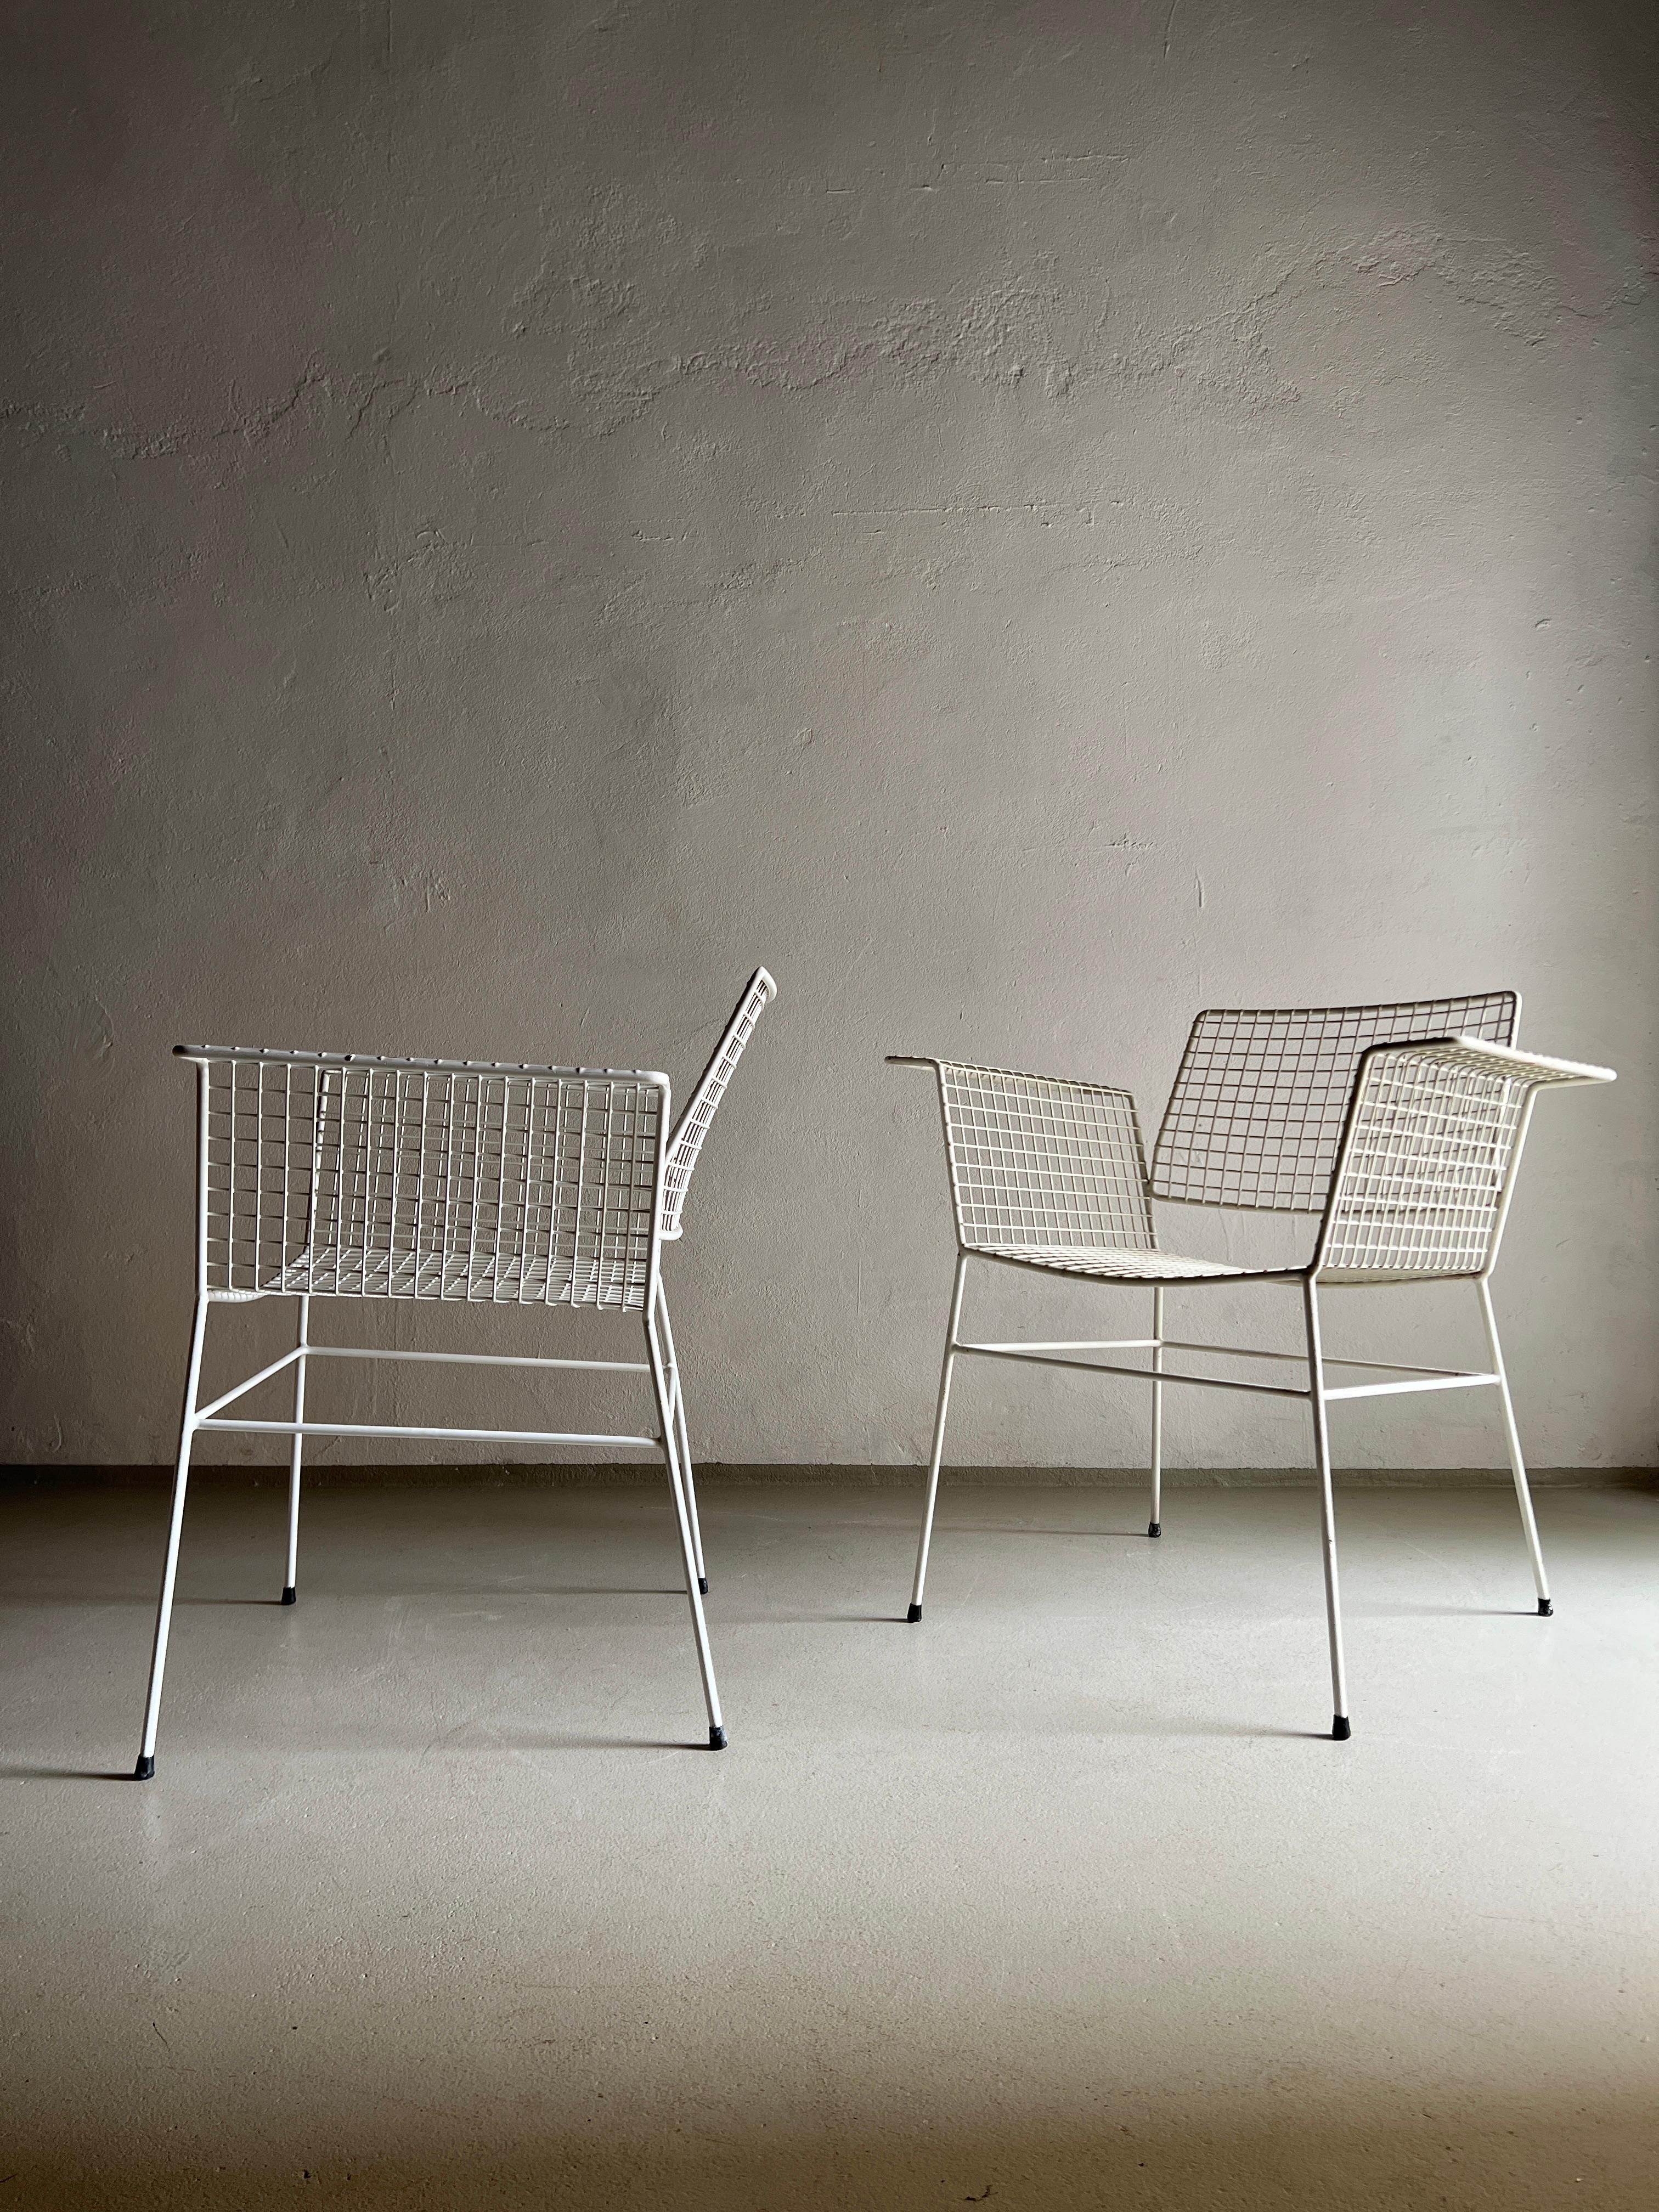 1 des 4 chaises en fil de fer blanc de Whiting. Les chaises peuvent être utilisées à l'extérieur et à l'intérieur. 4 chaises sont disponibles.

Informations complémentaires :
Pays de fabrication : Allemagne
Période : 1960s
Dimensions : 74,5 L x 55 P